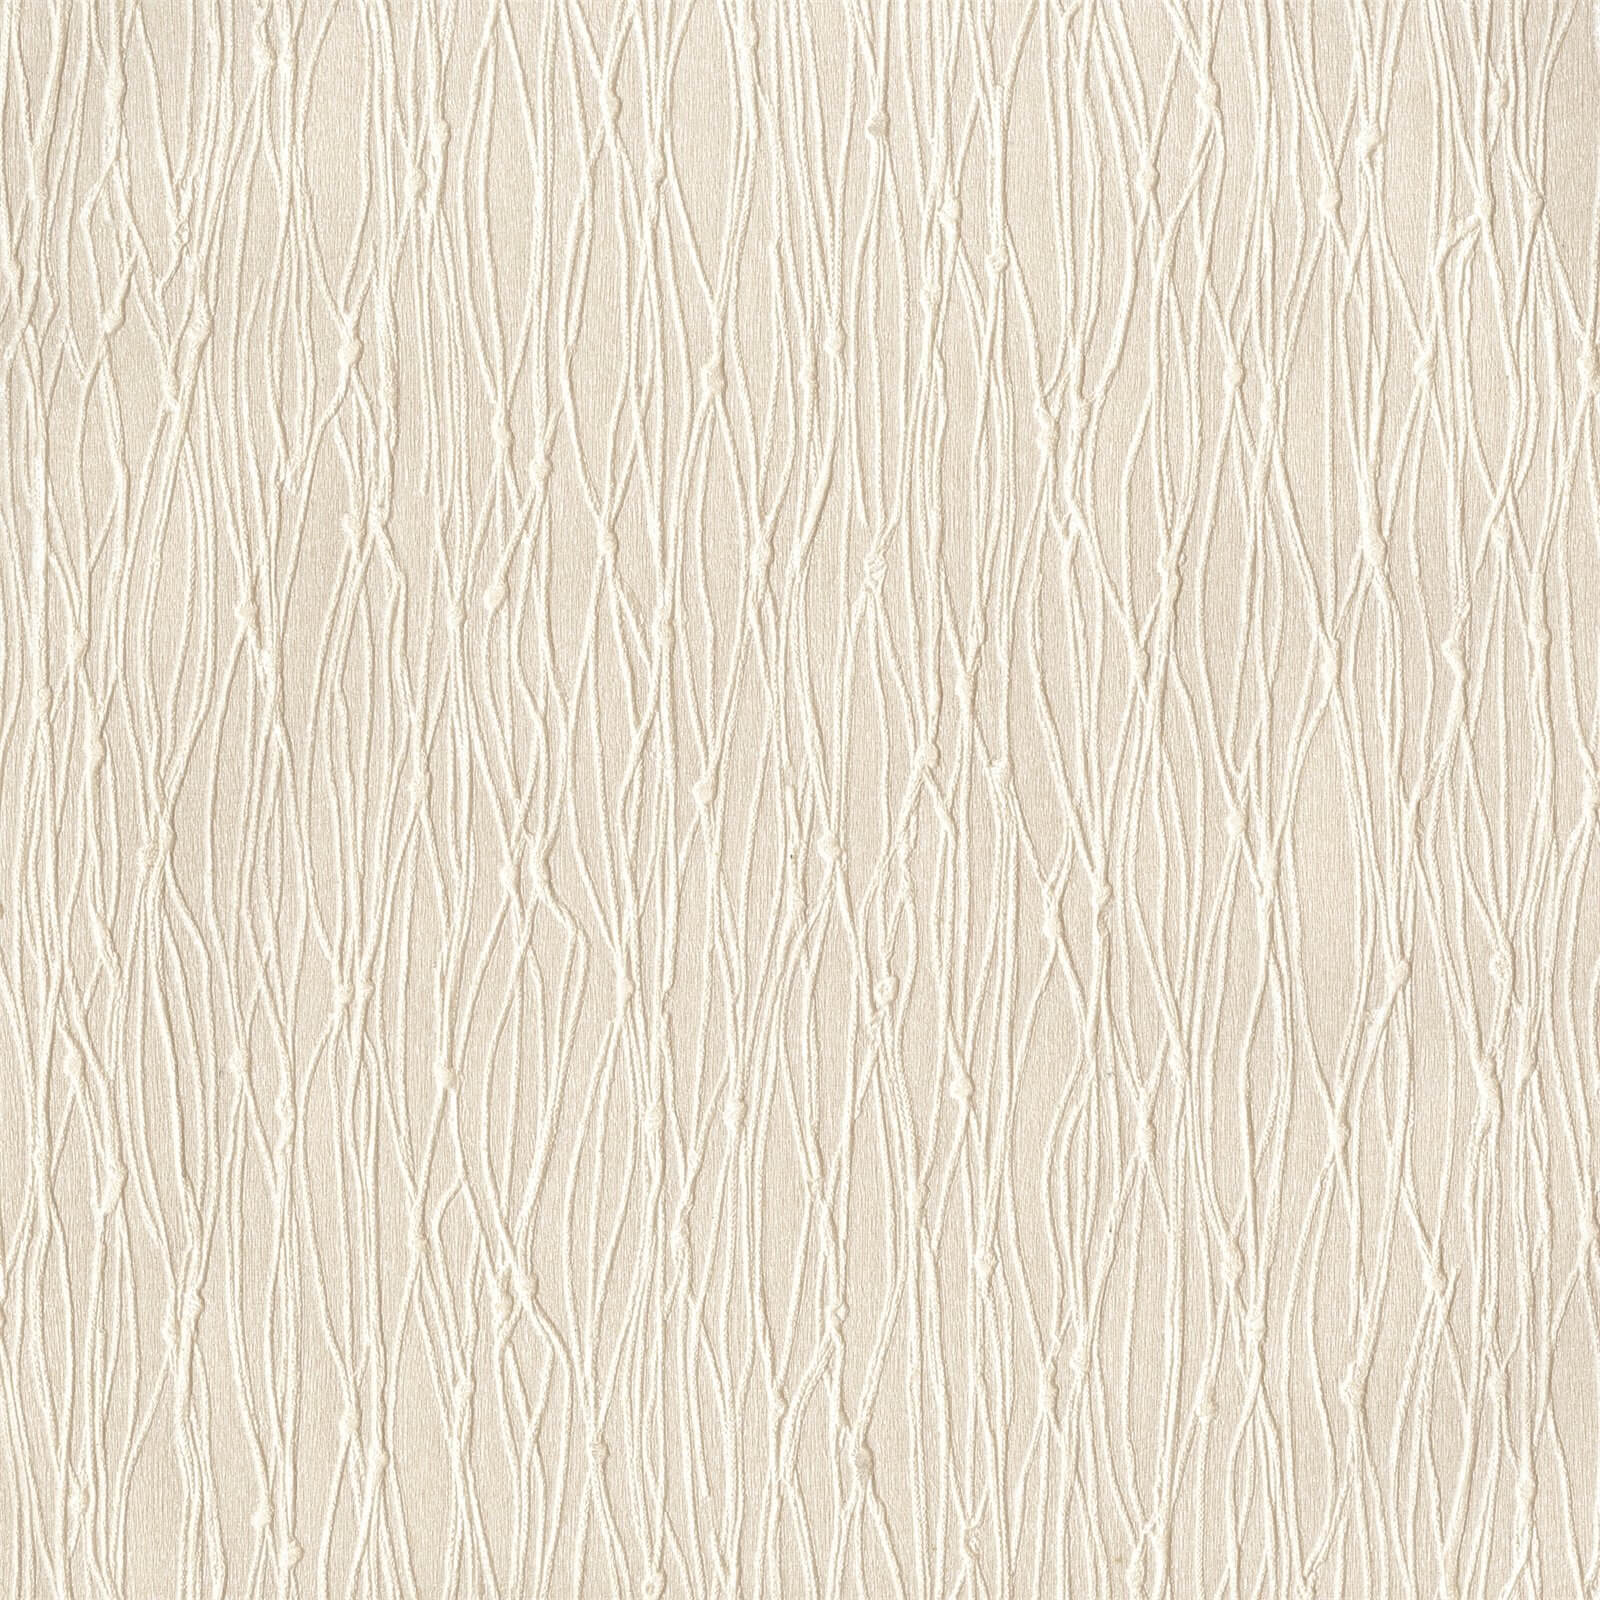 Holden Decor Sienna Texture Plain Embossed Cream Wallpaper